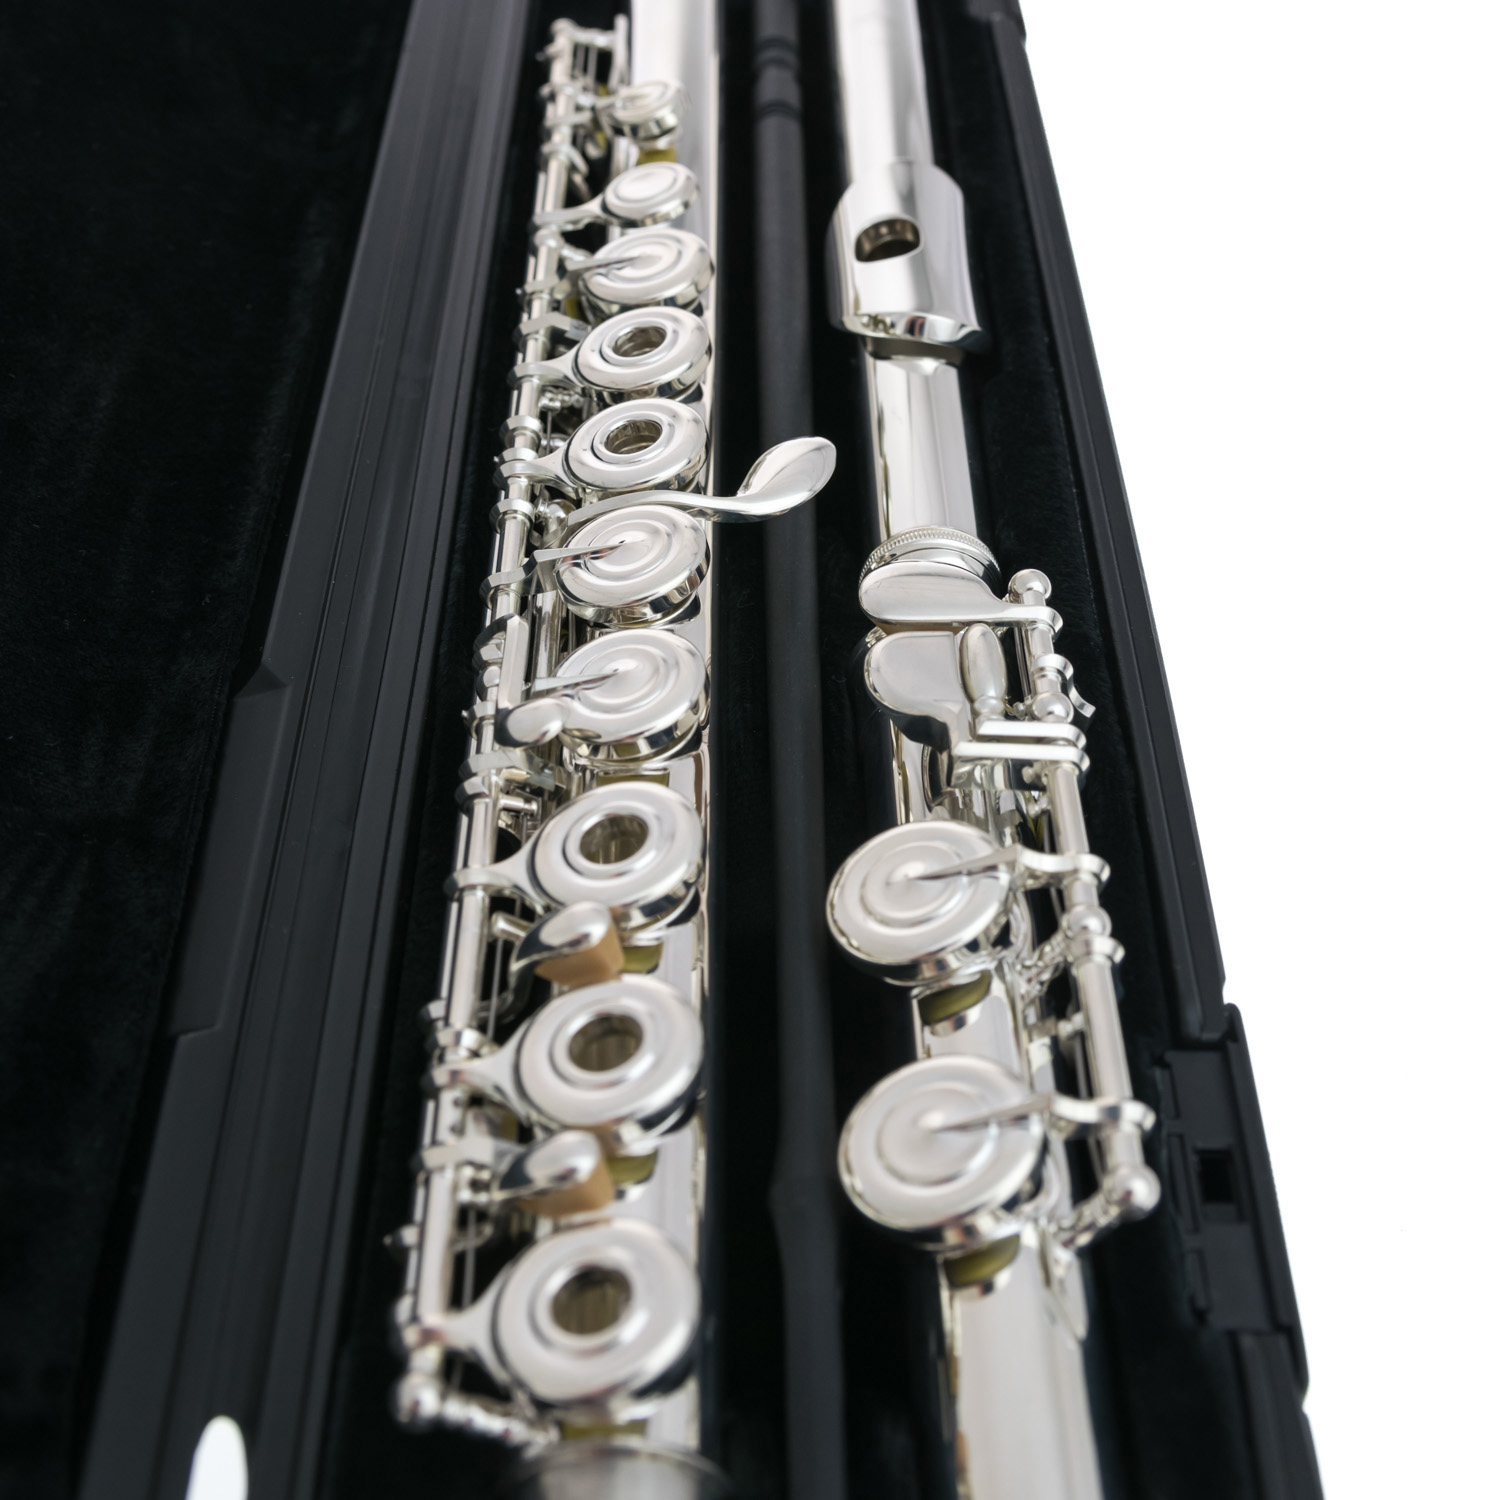 Yamaha Flute - YFL 382